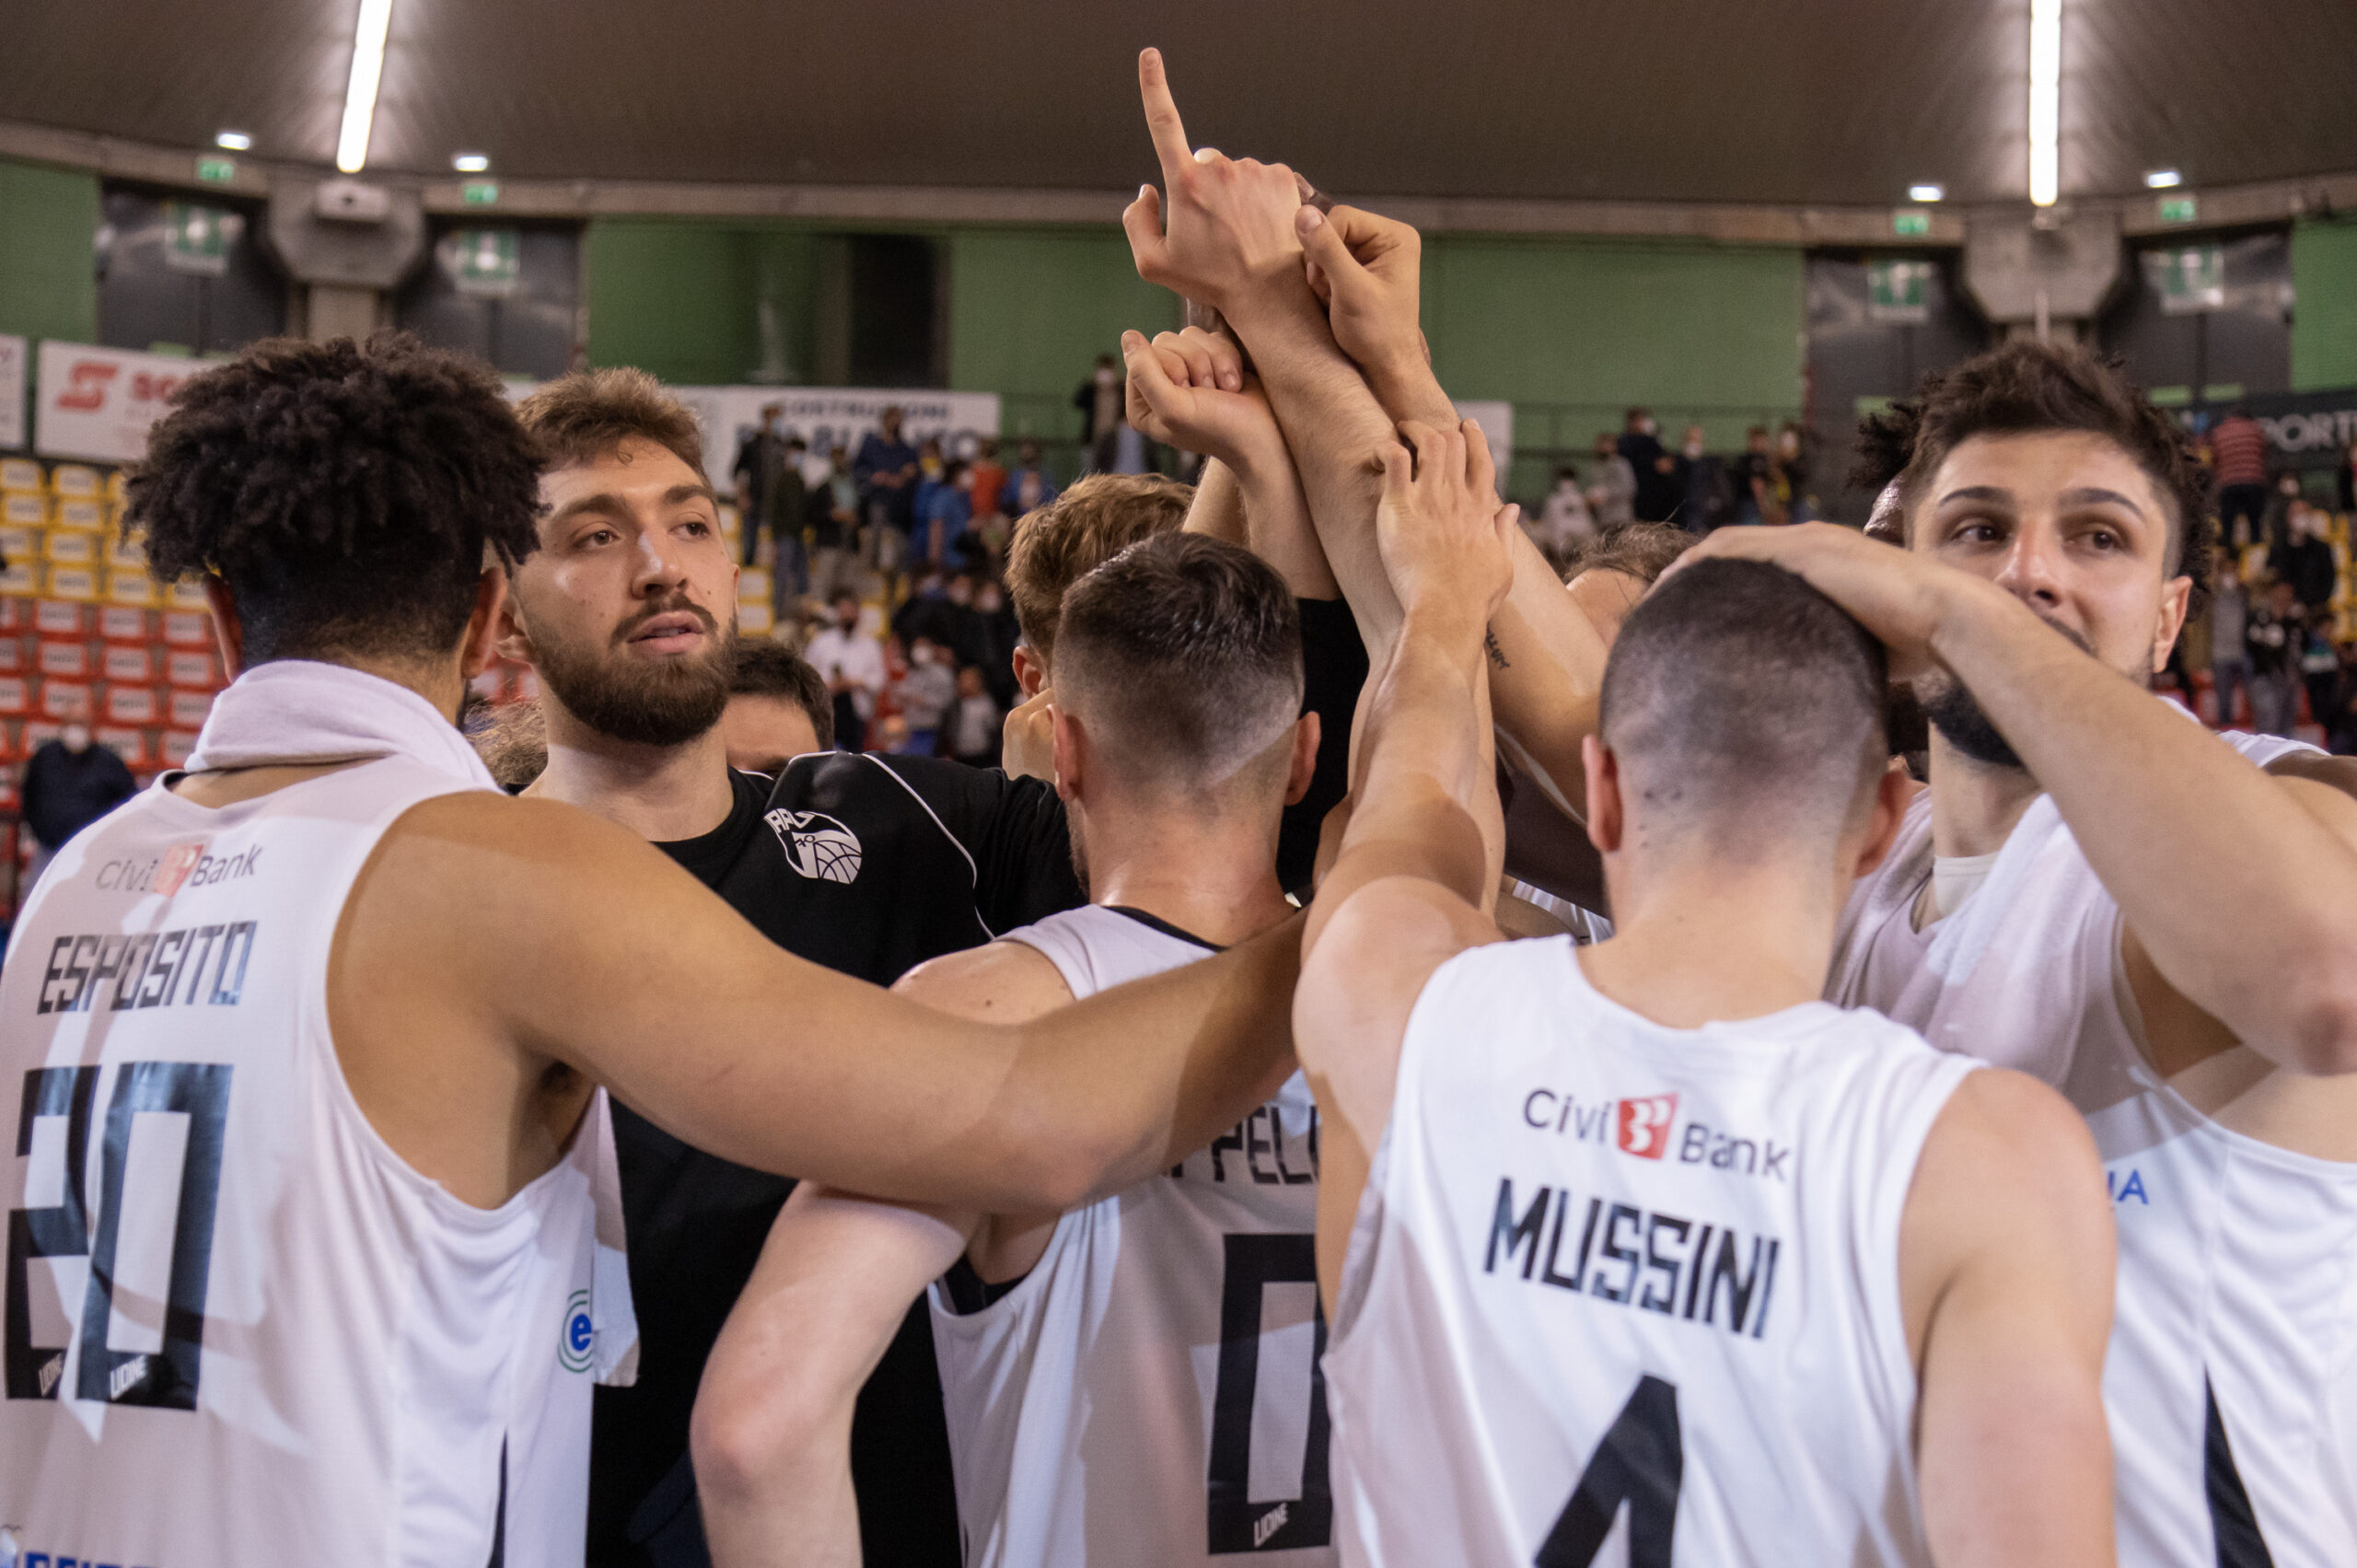 Final Four Coppa Italia LNP: La presentazione delle semifinali di serie B -  Basket World Life